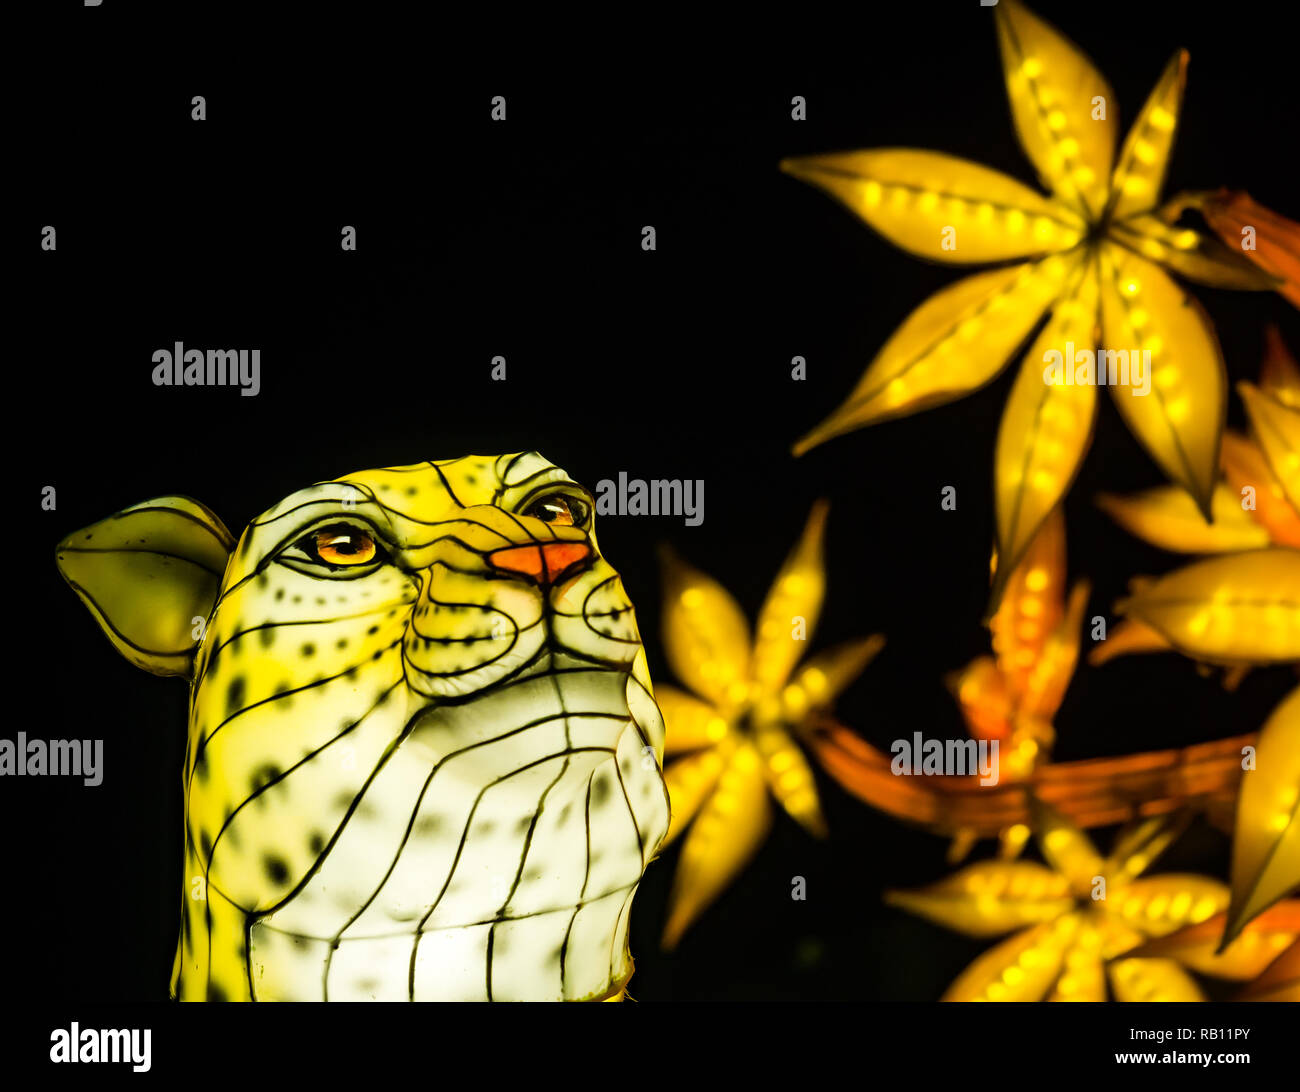 Lanternes Géantes de Chine afficher au Zoo d'Edimbourg, l'événement de Noël, Ecosse, Royaume-Uni. Un léopard Banque D'Images